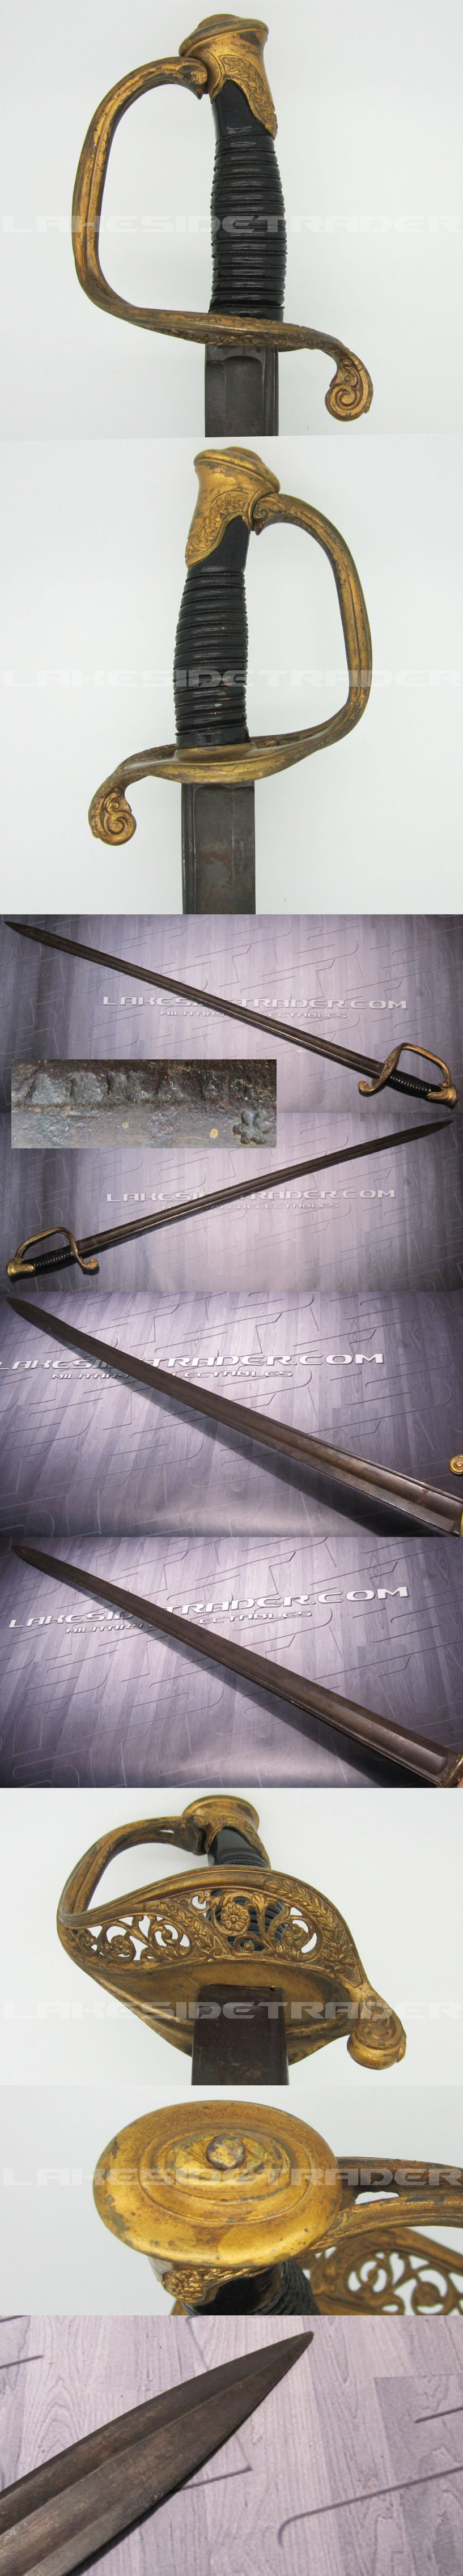 US Civil War Model 1850 Army Staff & Field Officers Sword